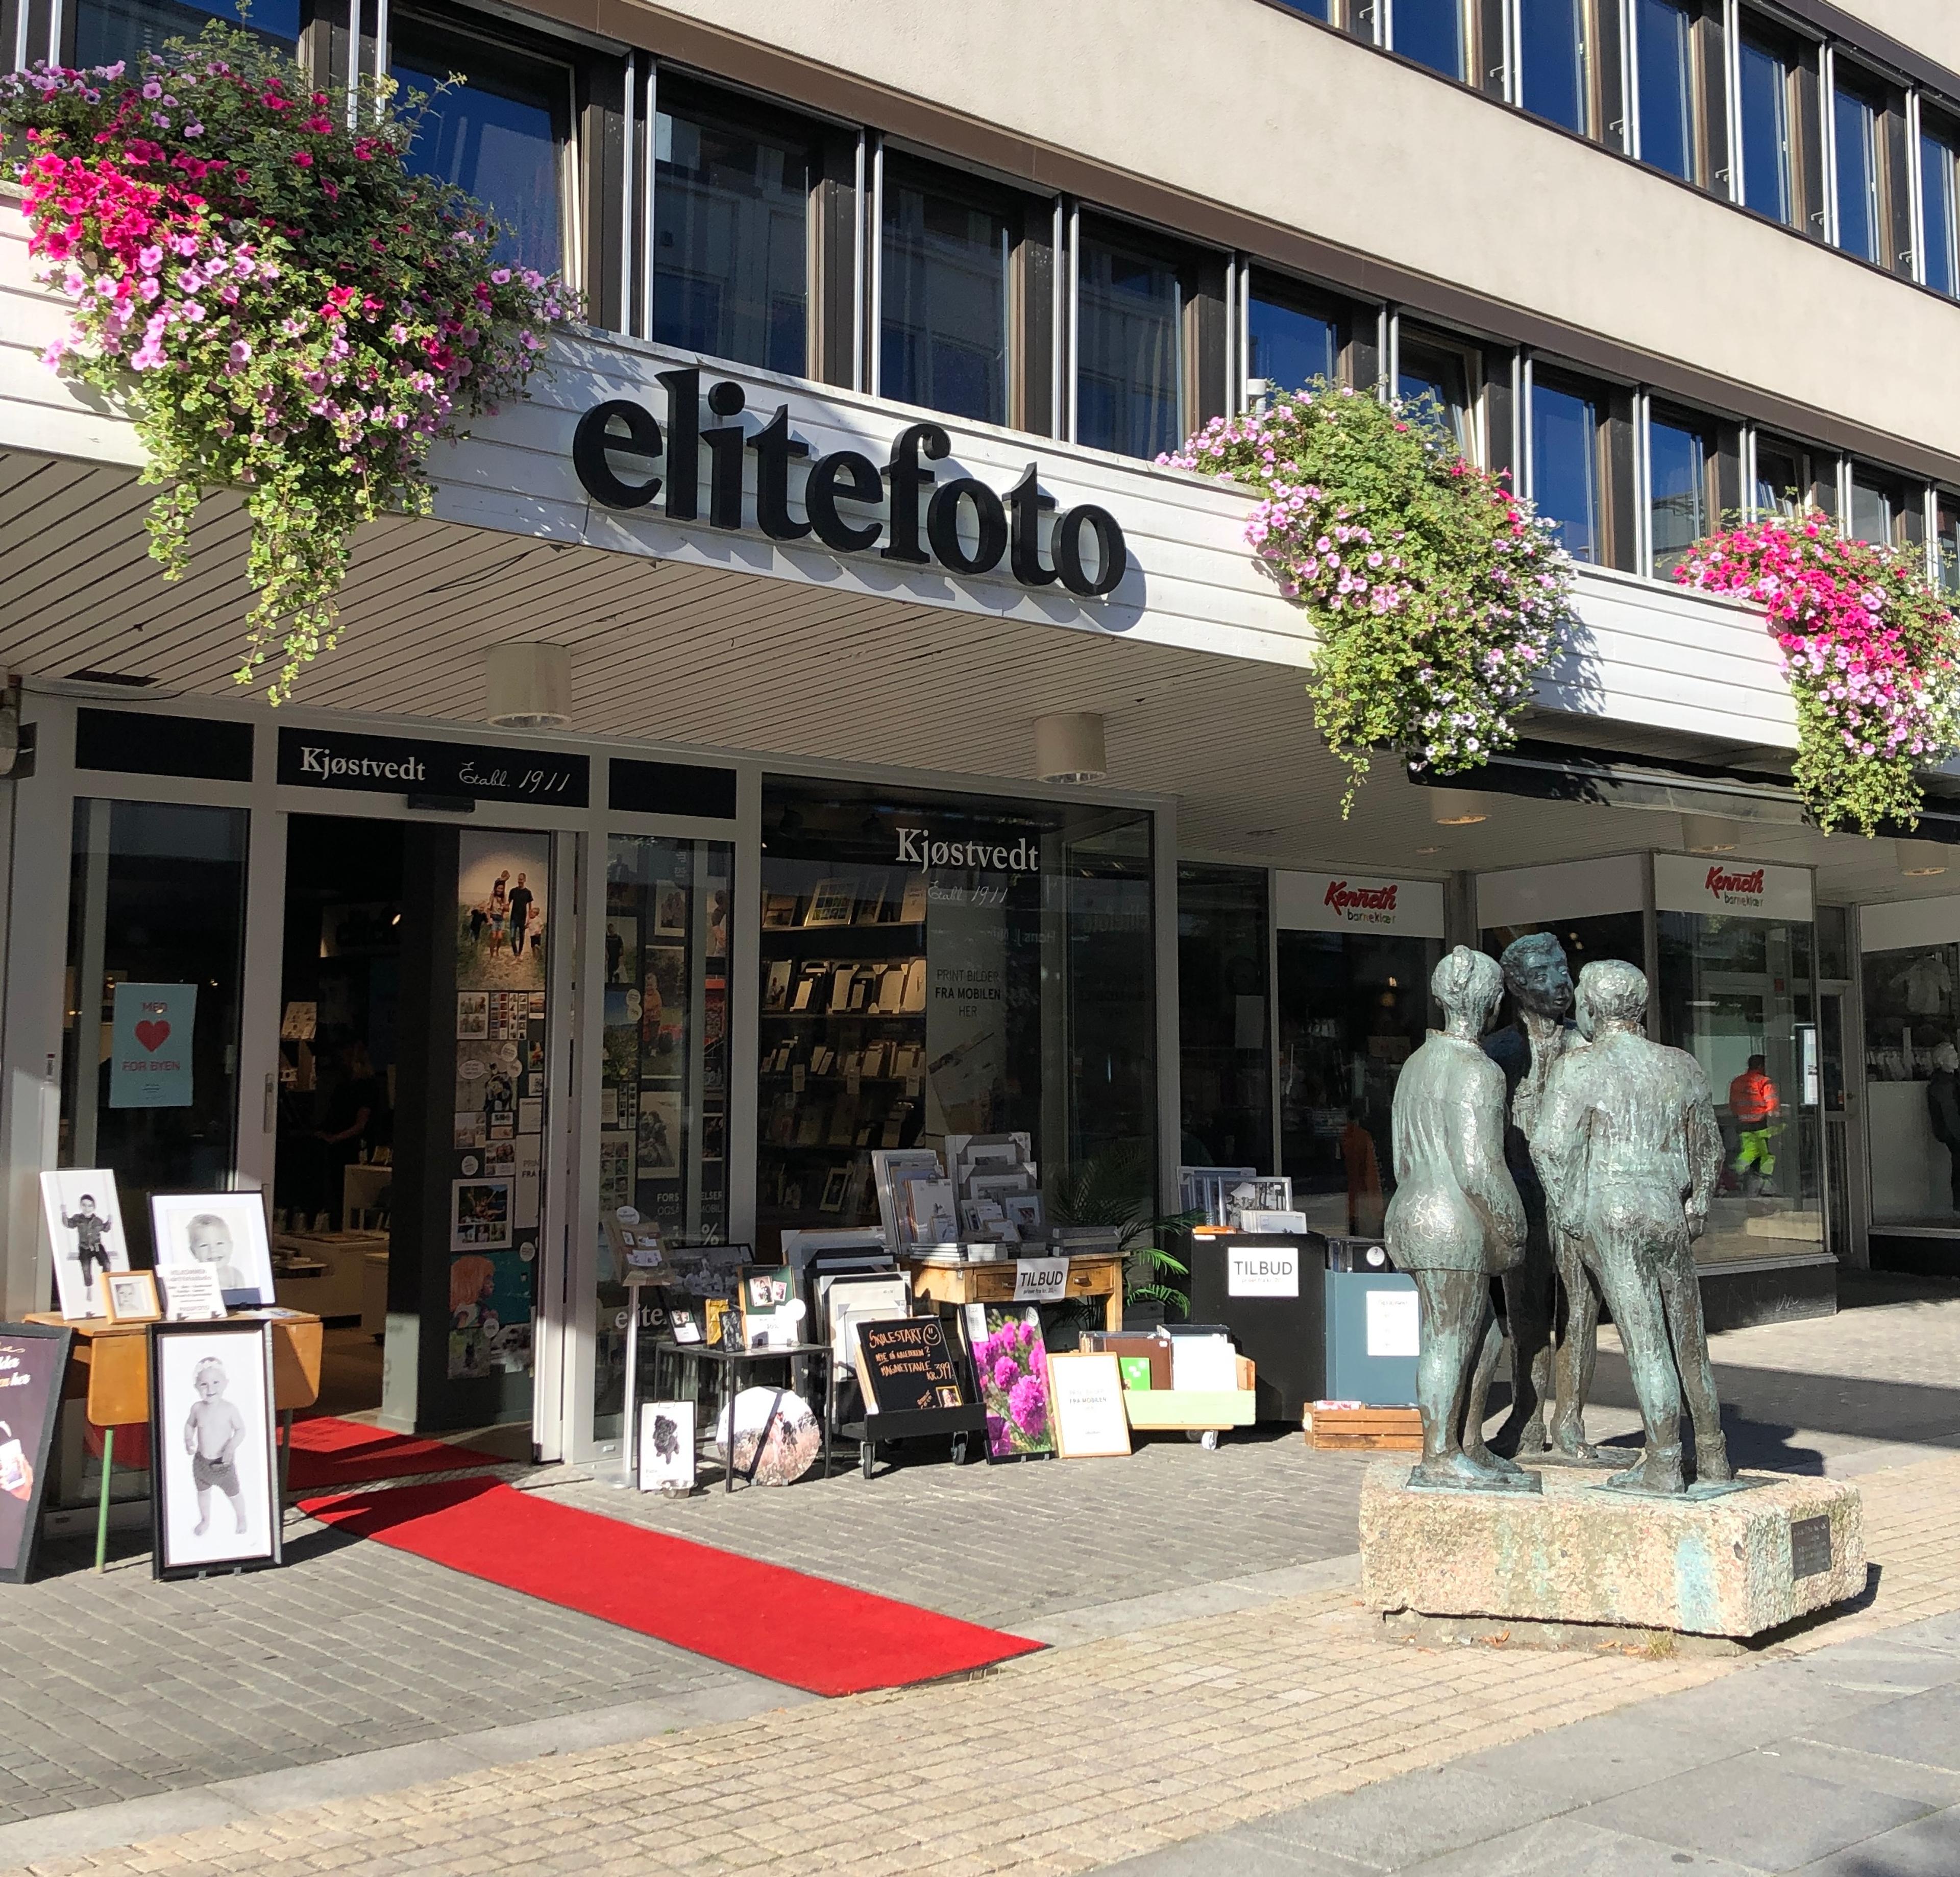 Elite Fotos butikk i Markens gate i Kristiansand sentrum 